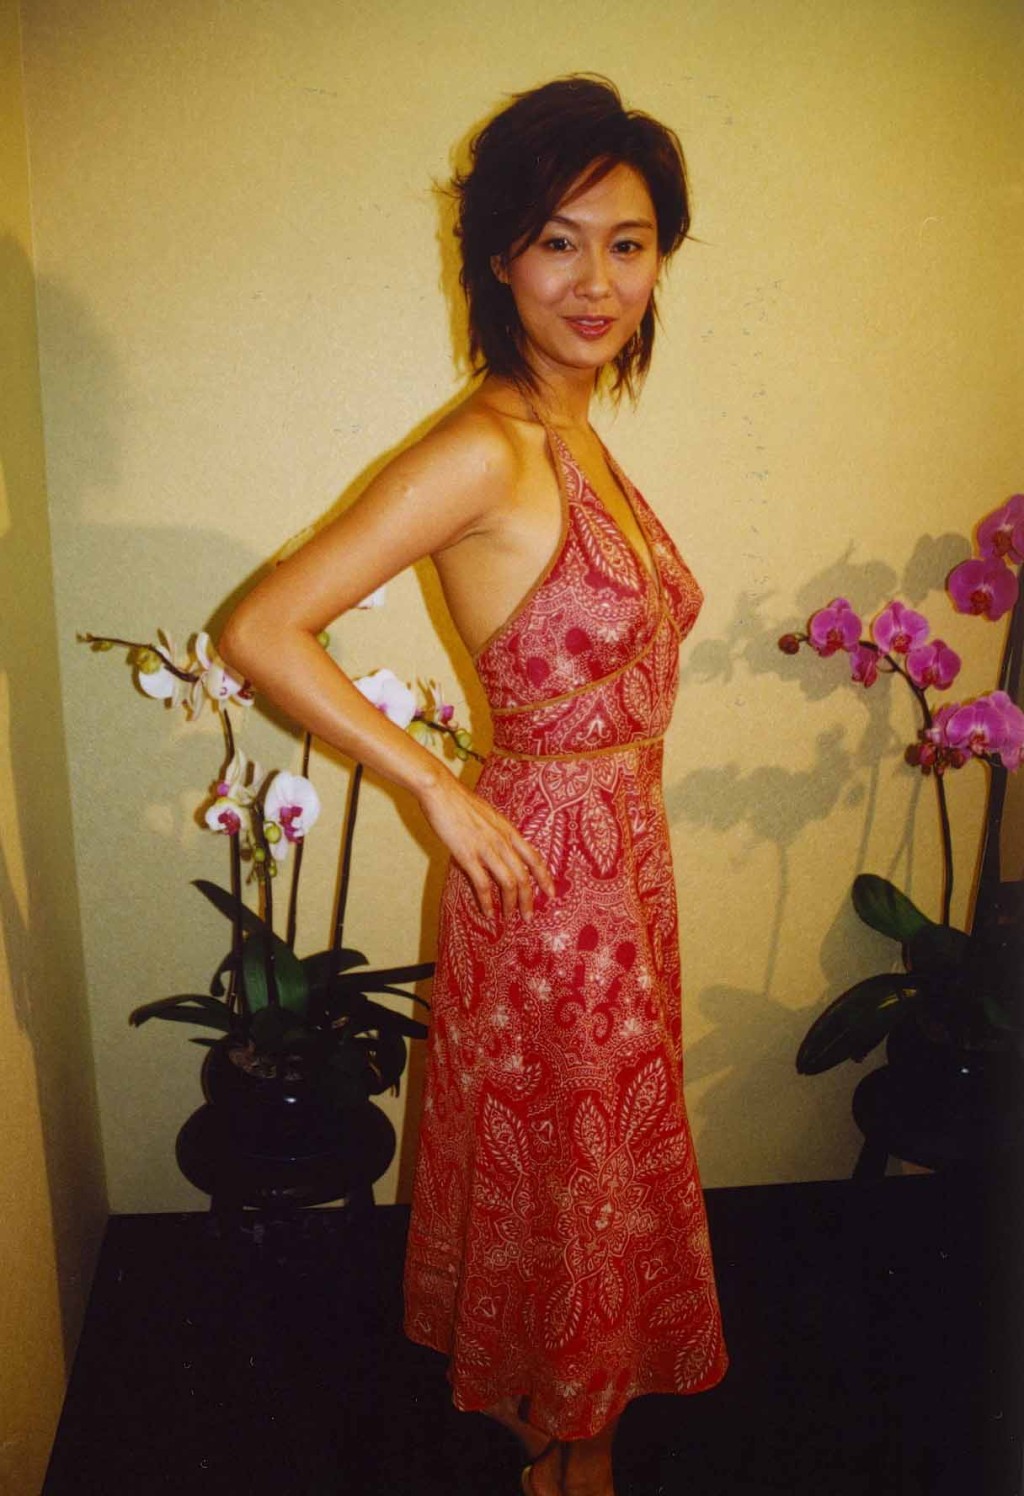 朱茵曾被讚網民評選為五官最完美香港女星。